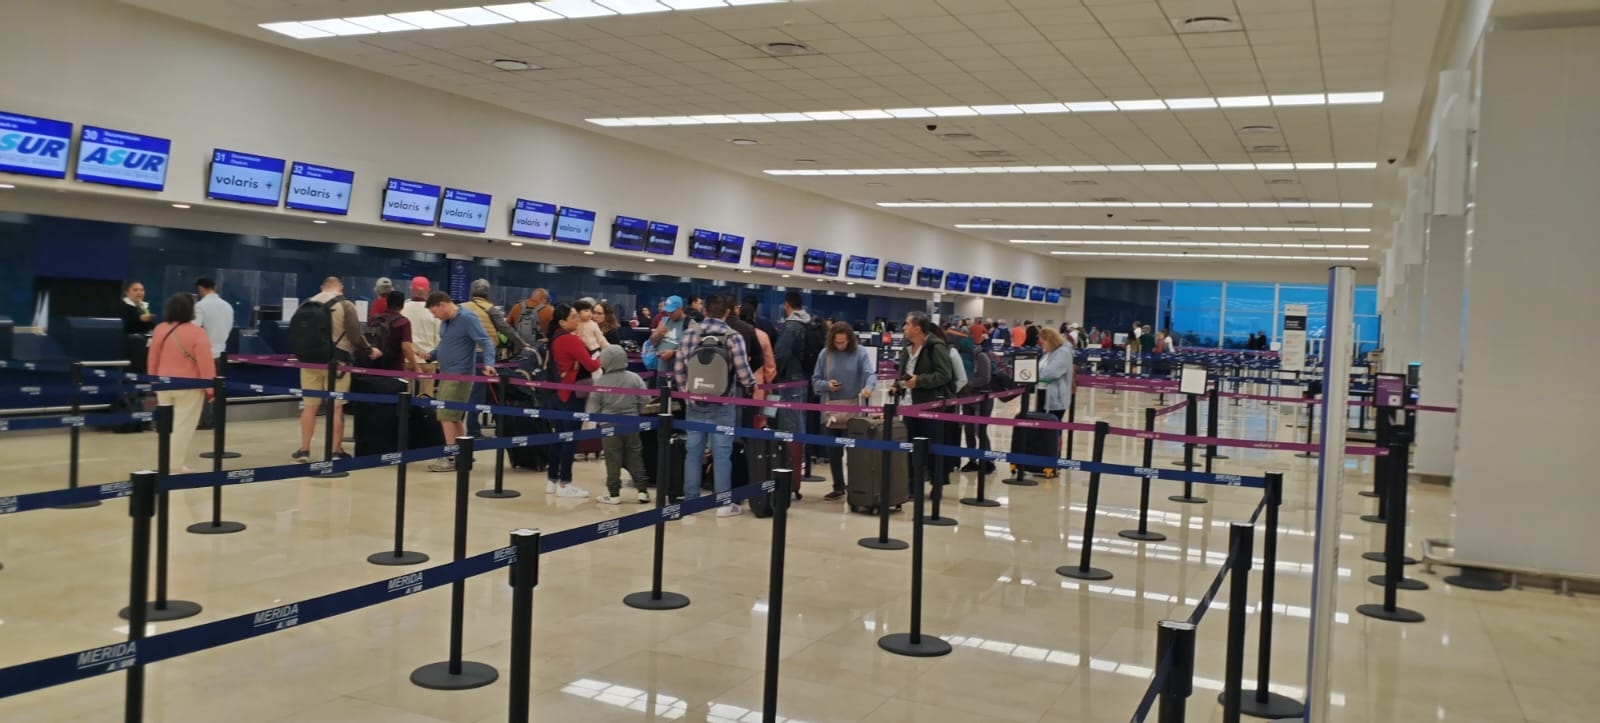 Los vuelos en el aeropuerto de Mérida son mayormente adelantados